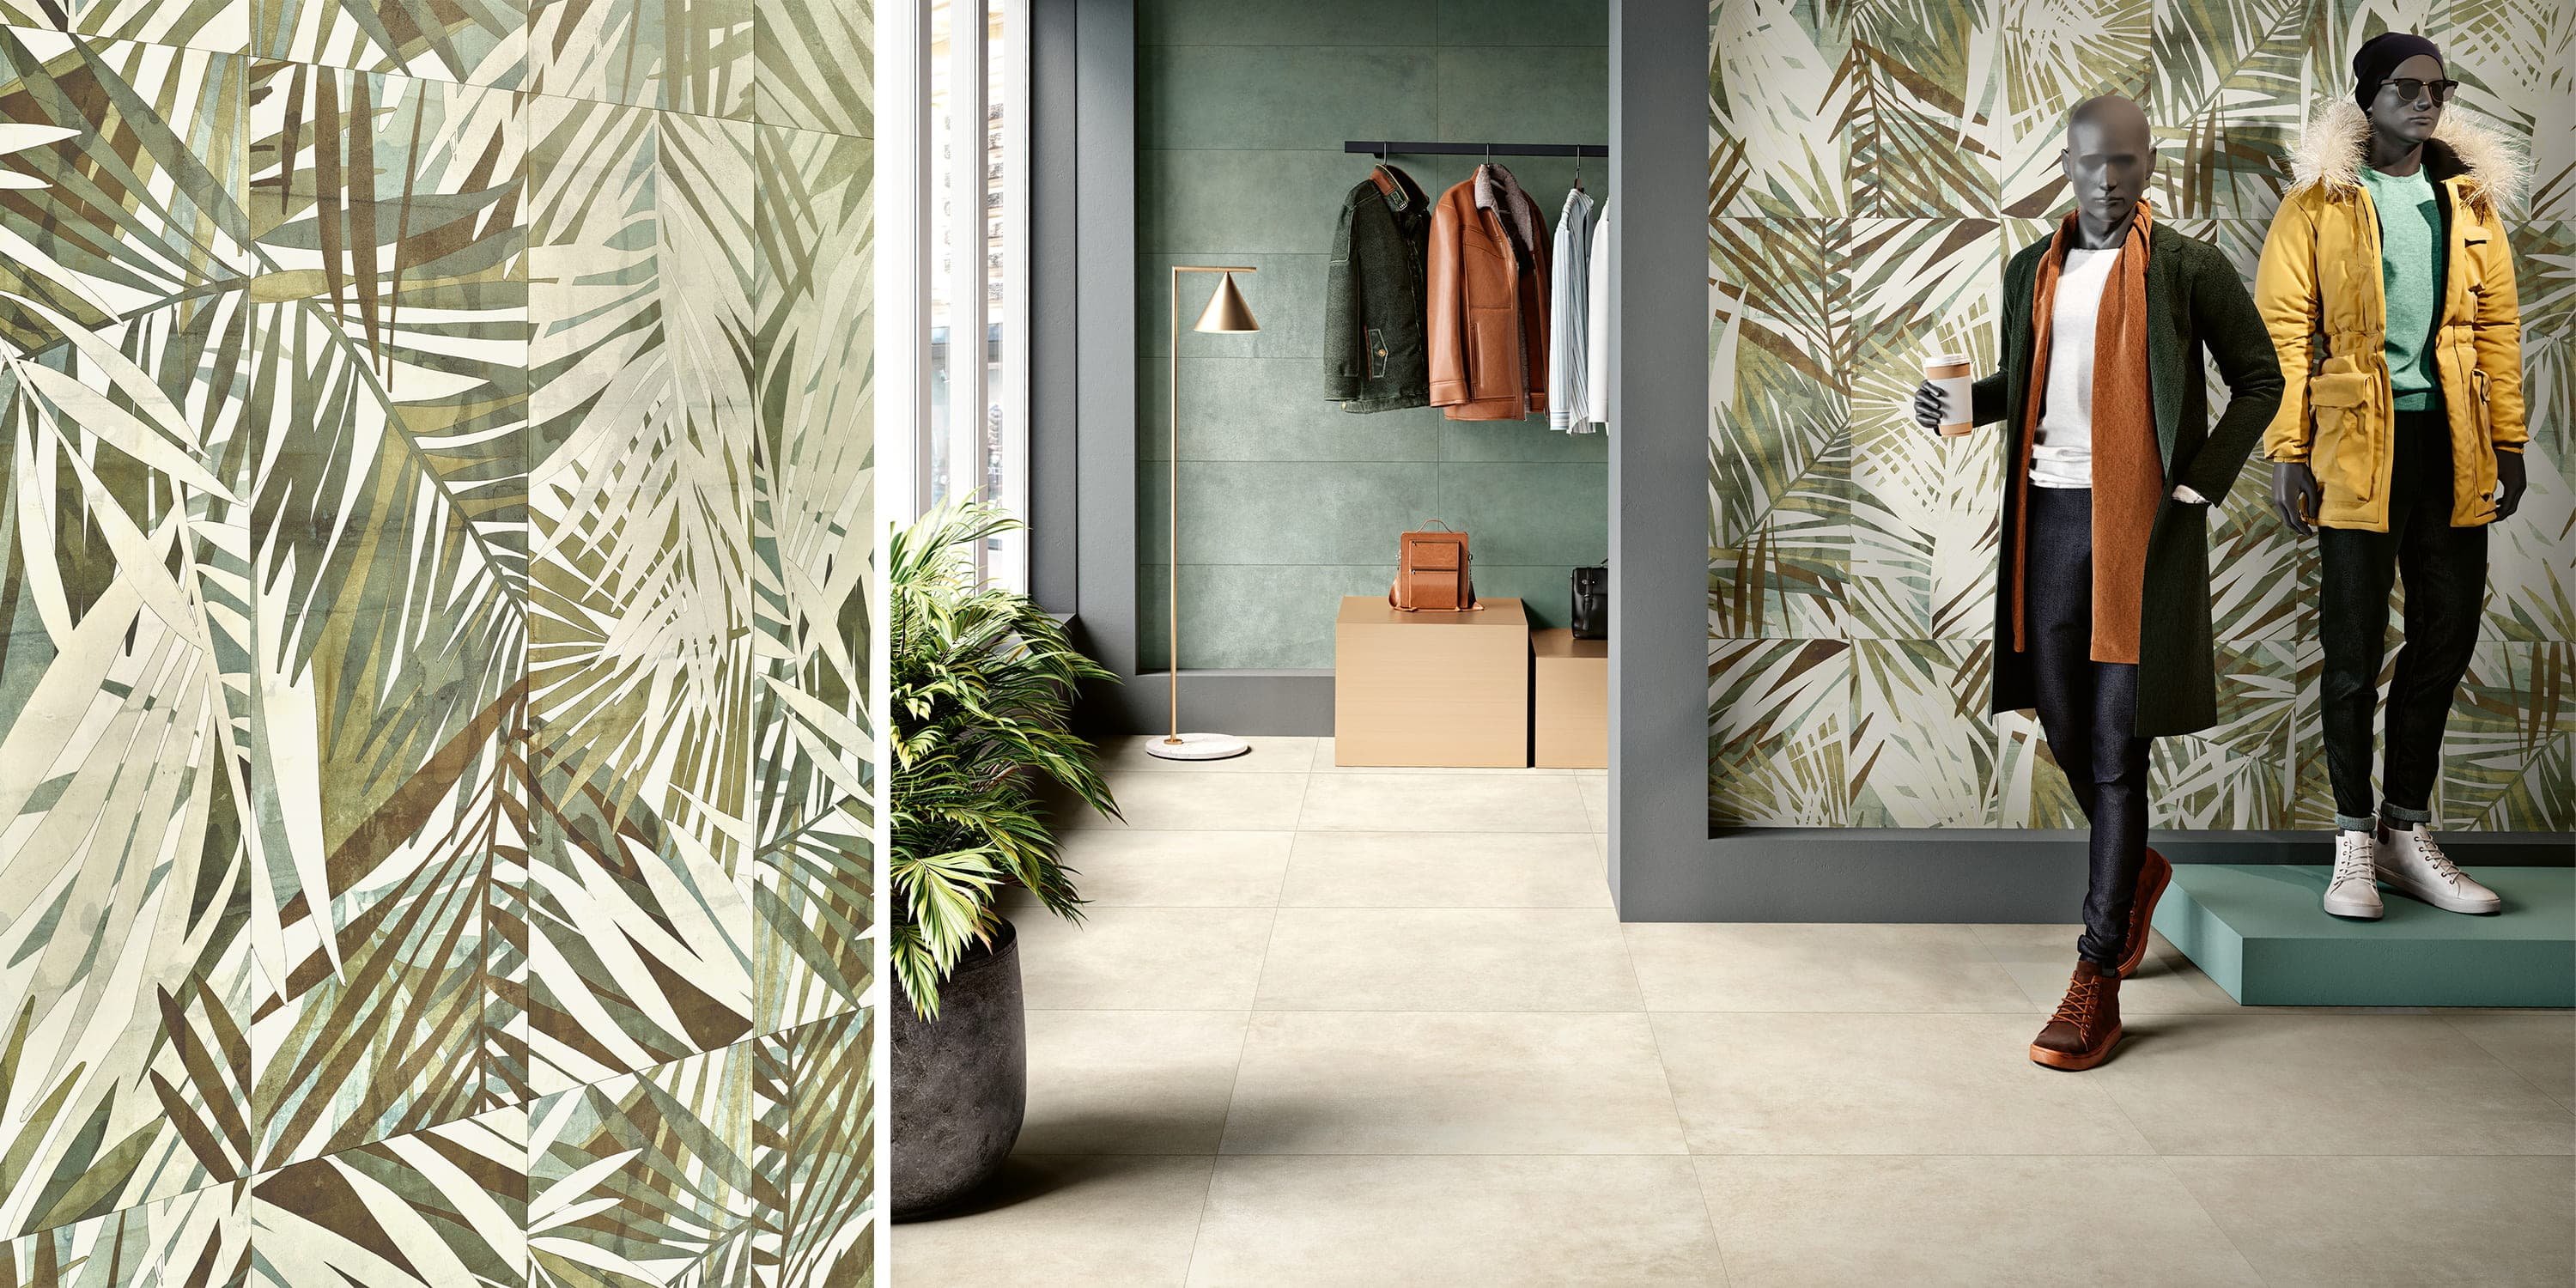 #Koupelna #Kuchyně #Moderní styl #béžová #bílá #oranžová #šedá #zelená #Extra velký formát #Matný obklad #1000 - 1500 Kč/m2